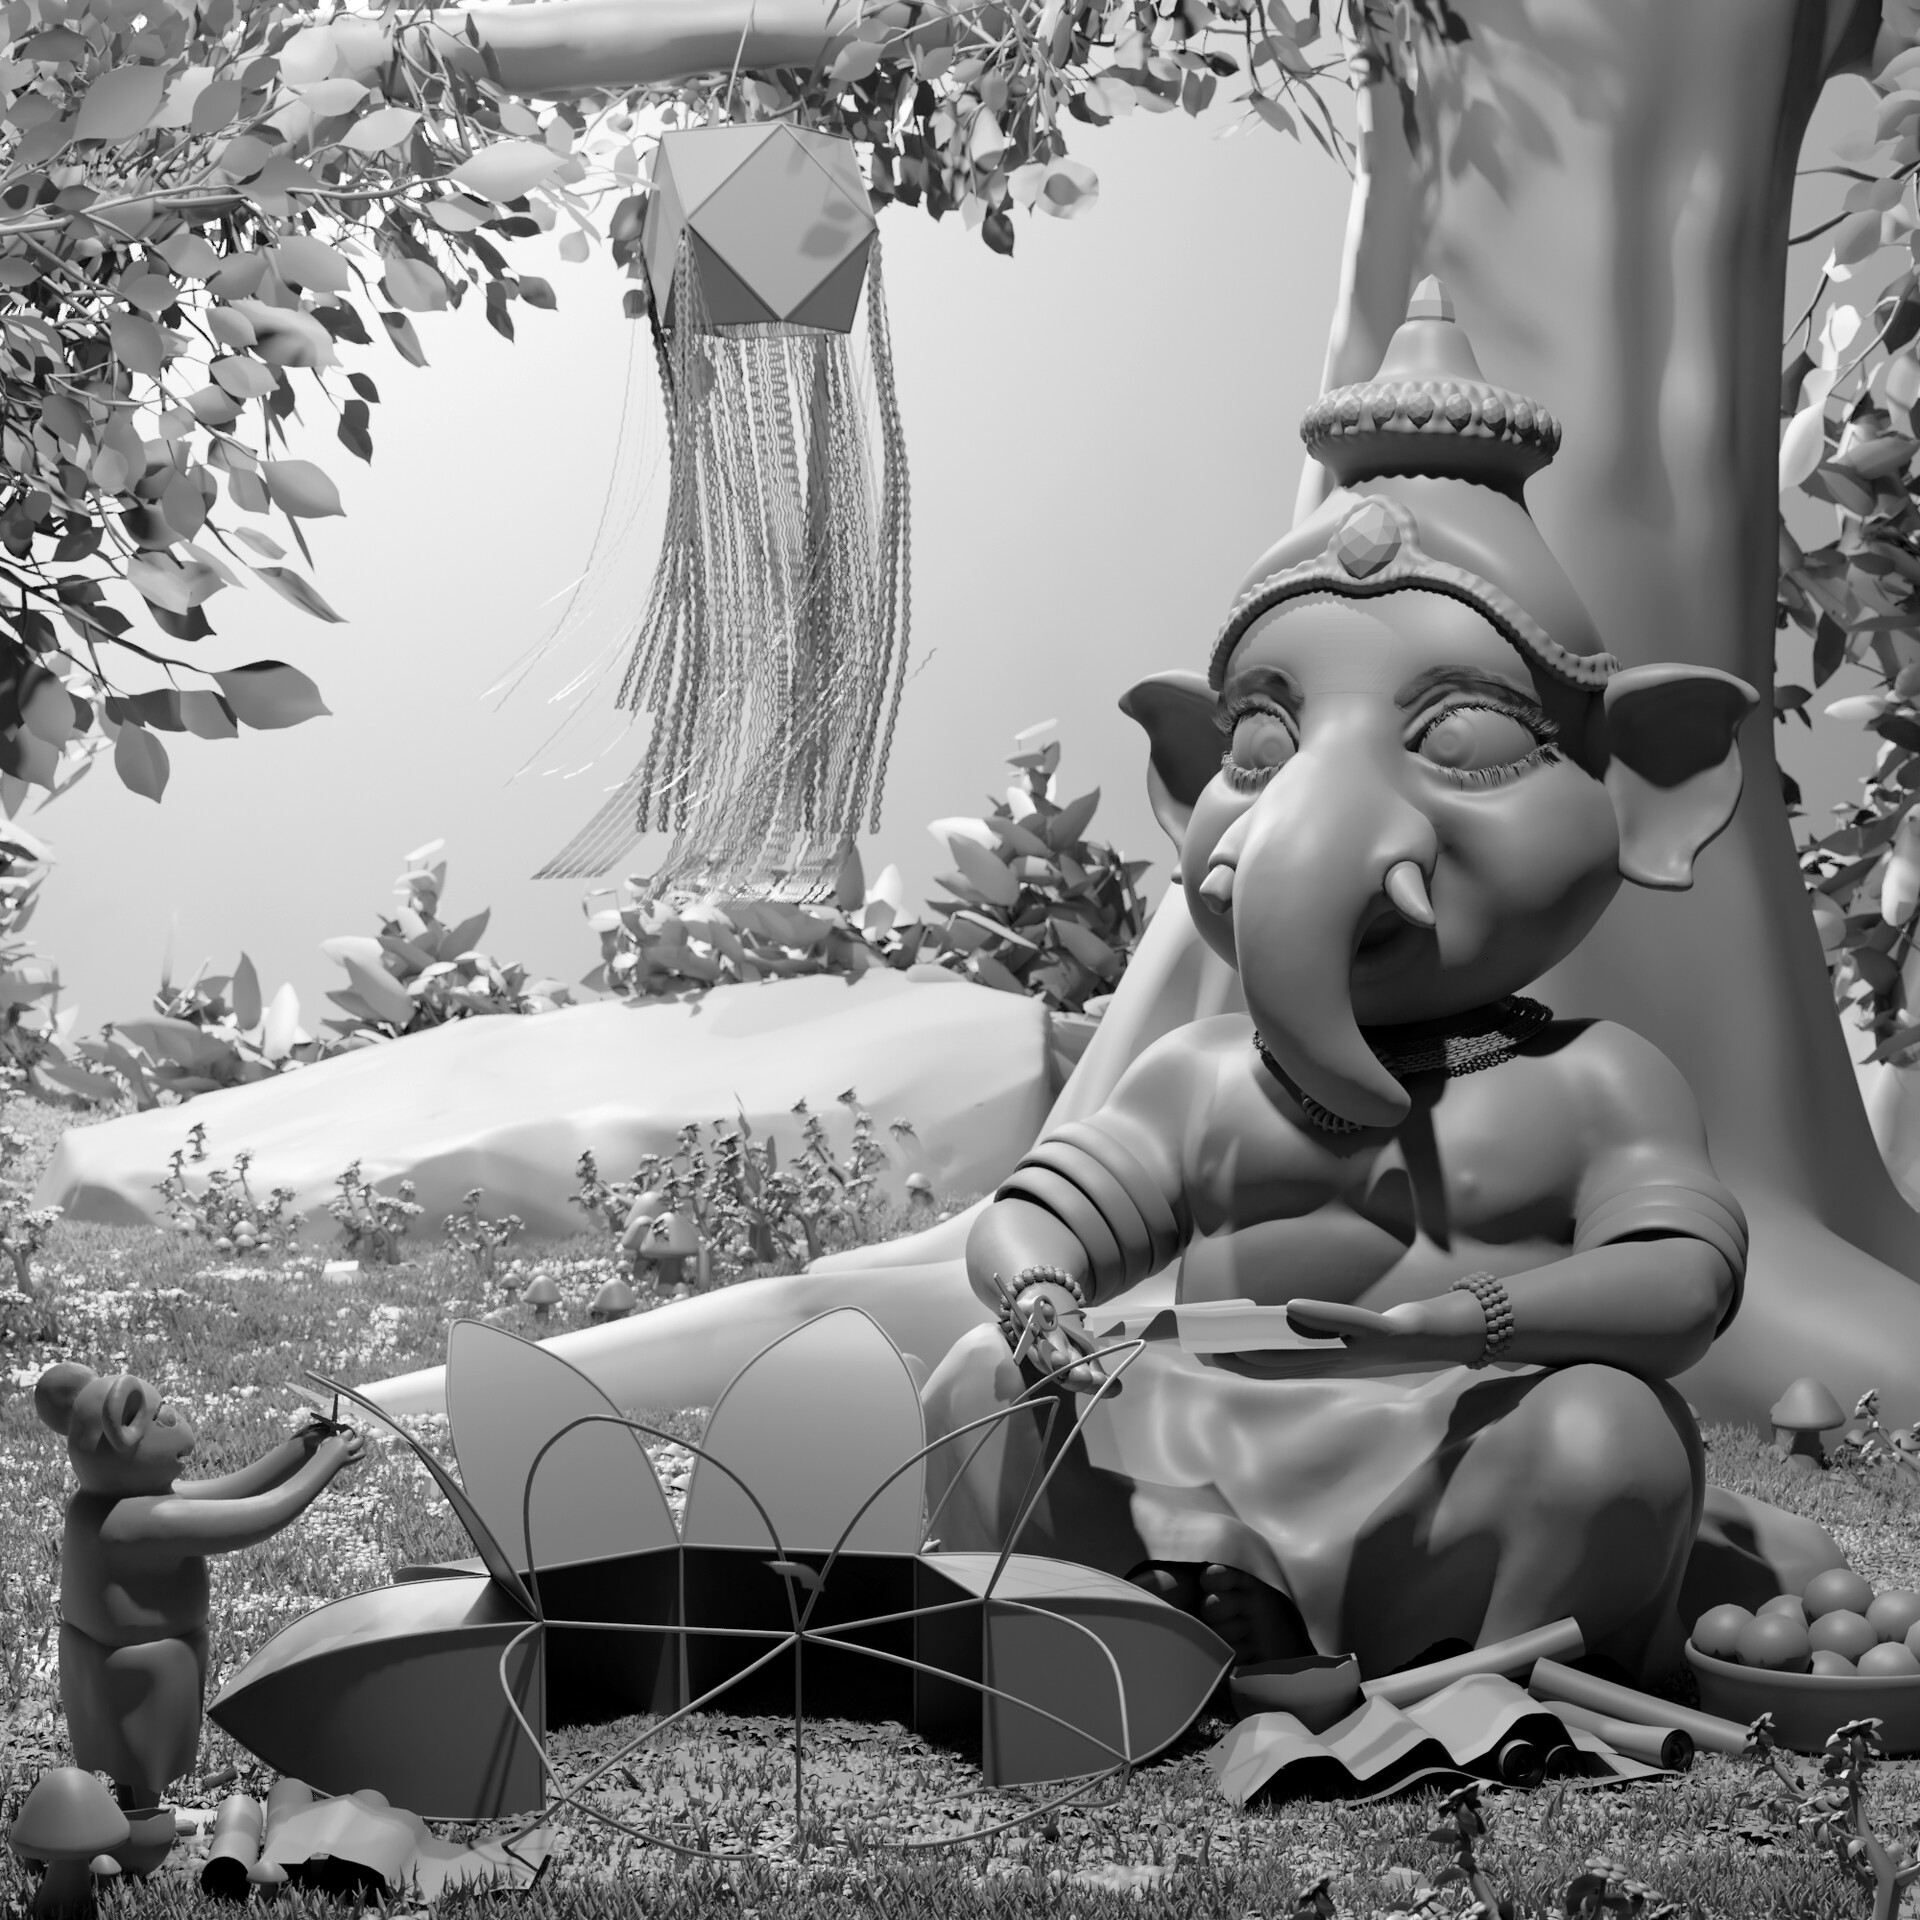 ArtStation - Lord Ganesha celebrates Vesak